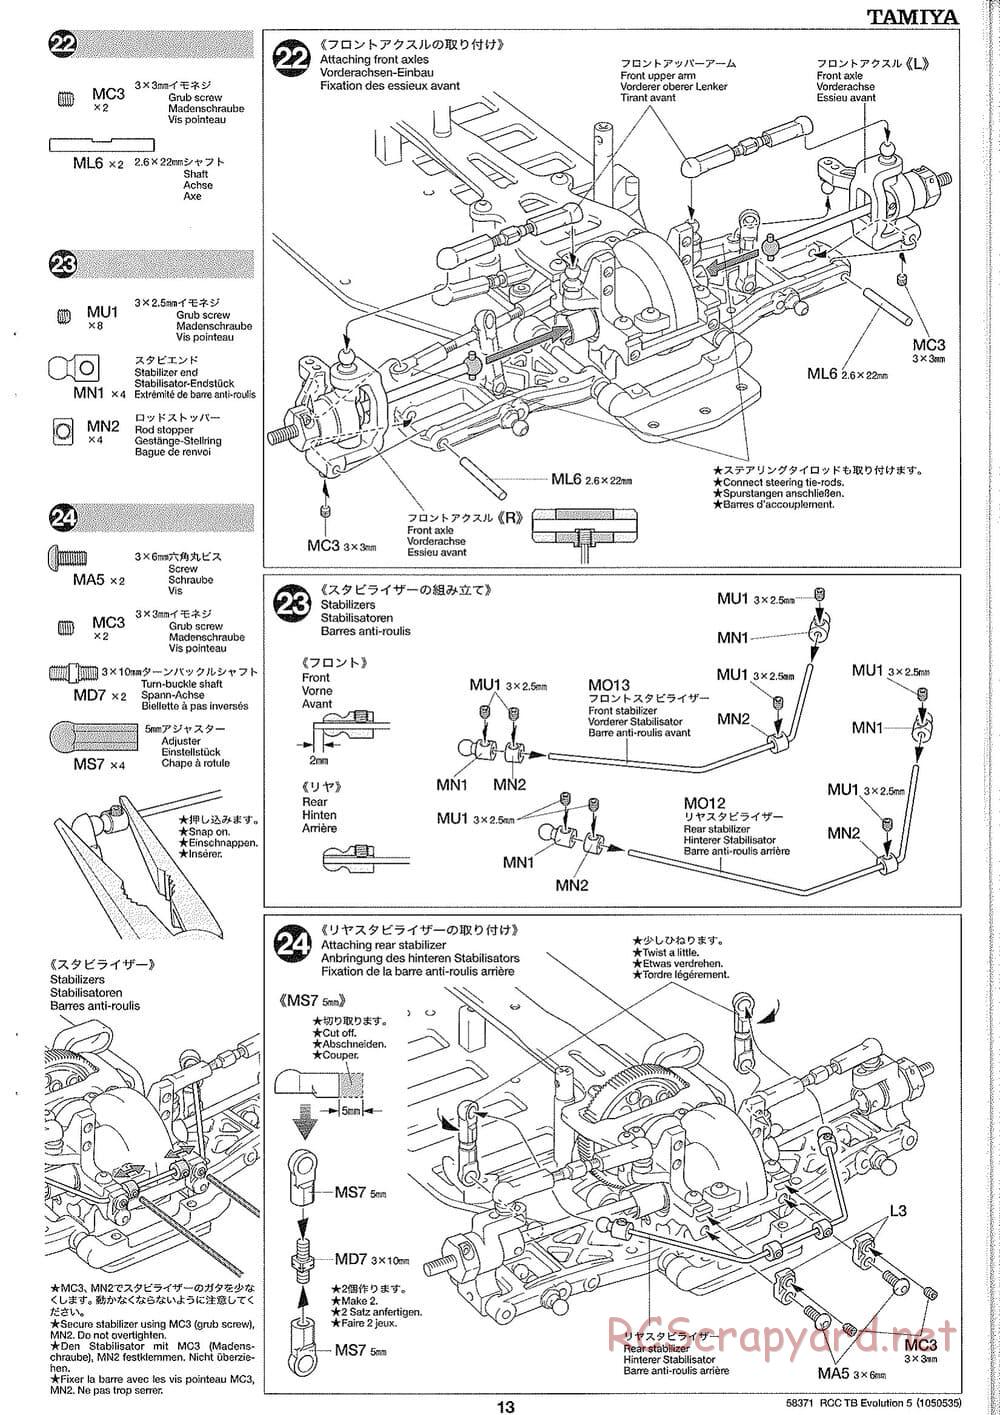 Tamiya - TB Evolution V Chassis - Manual - Page 13